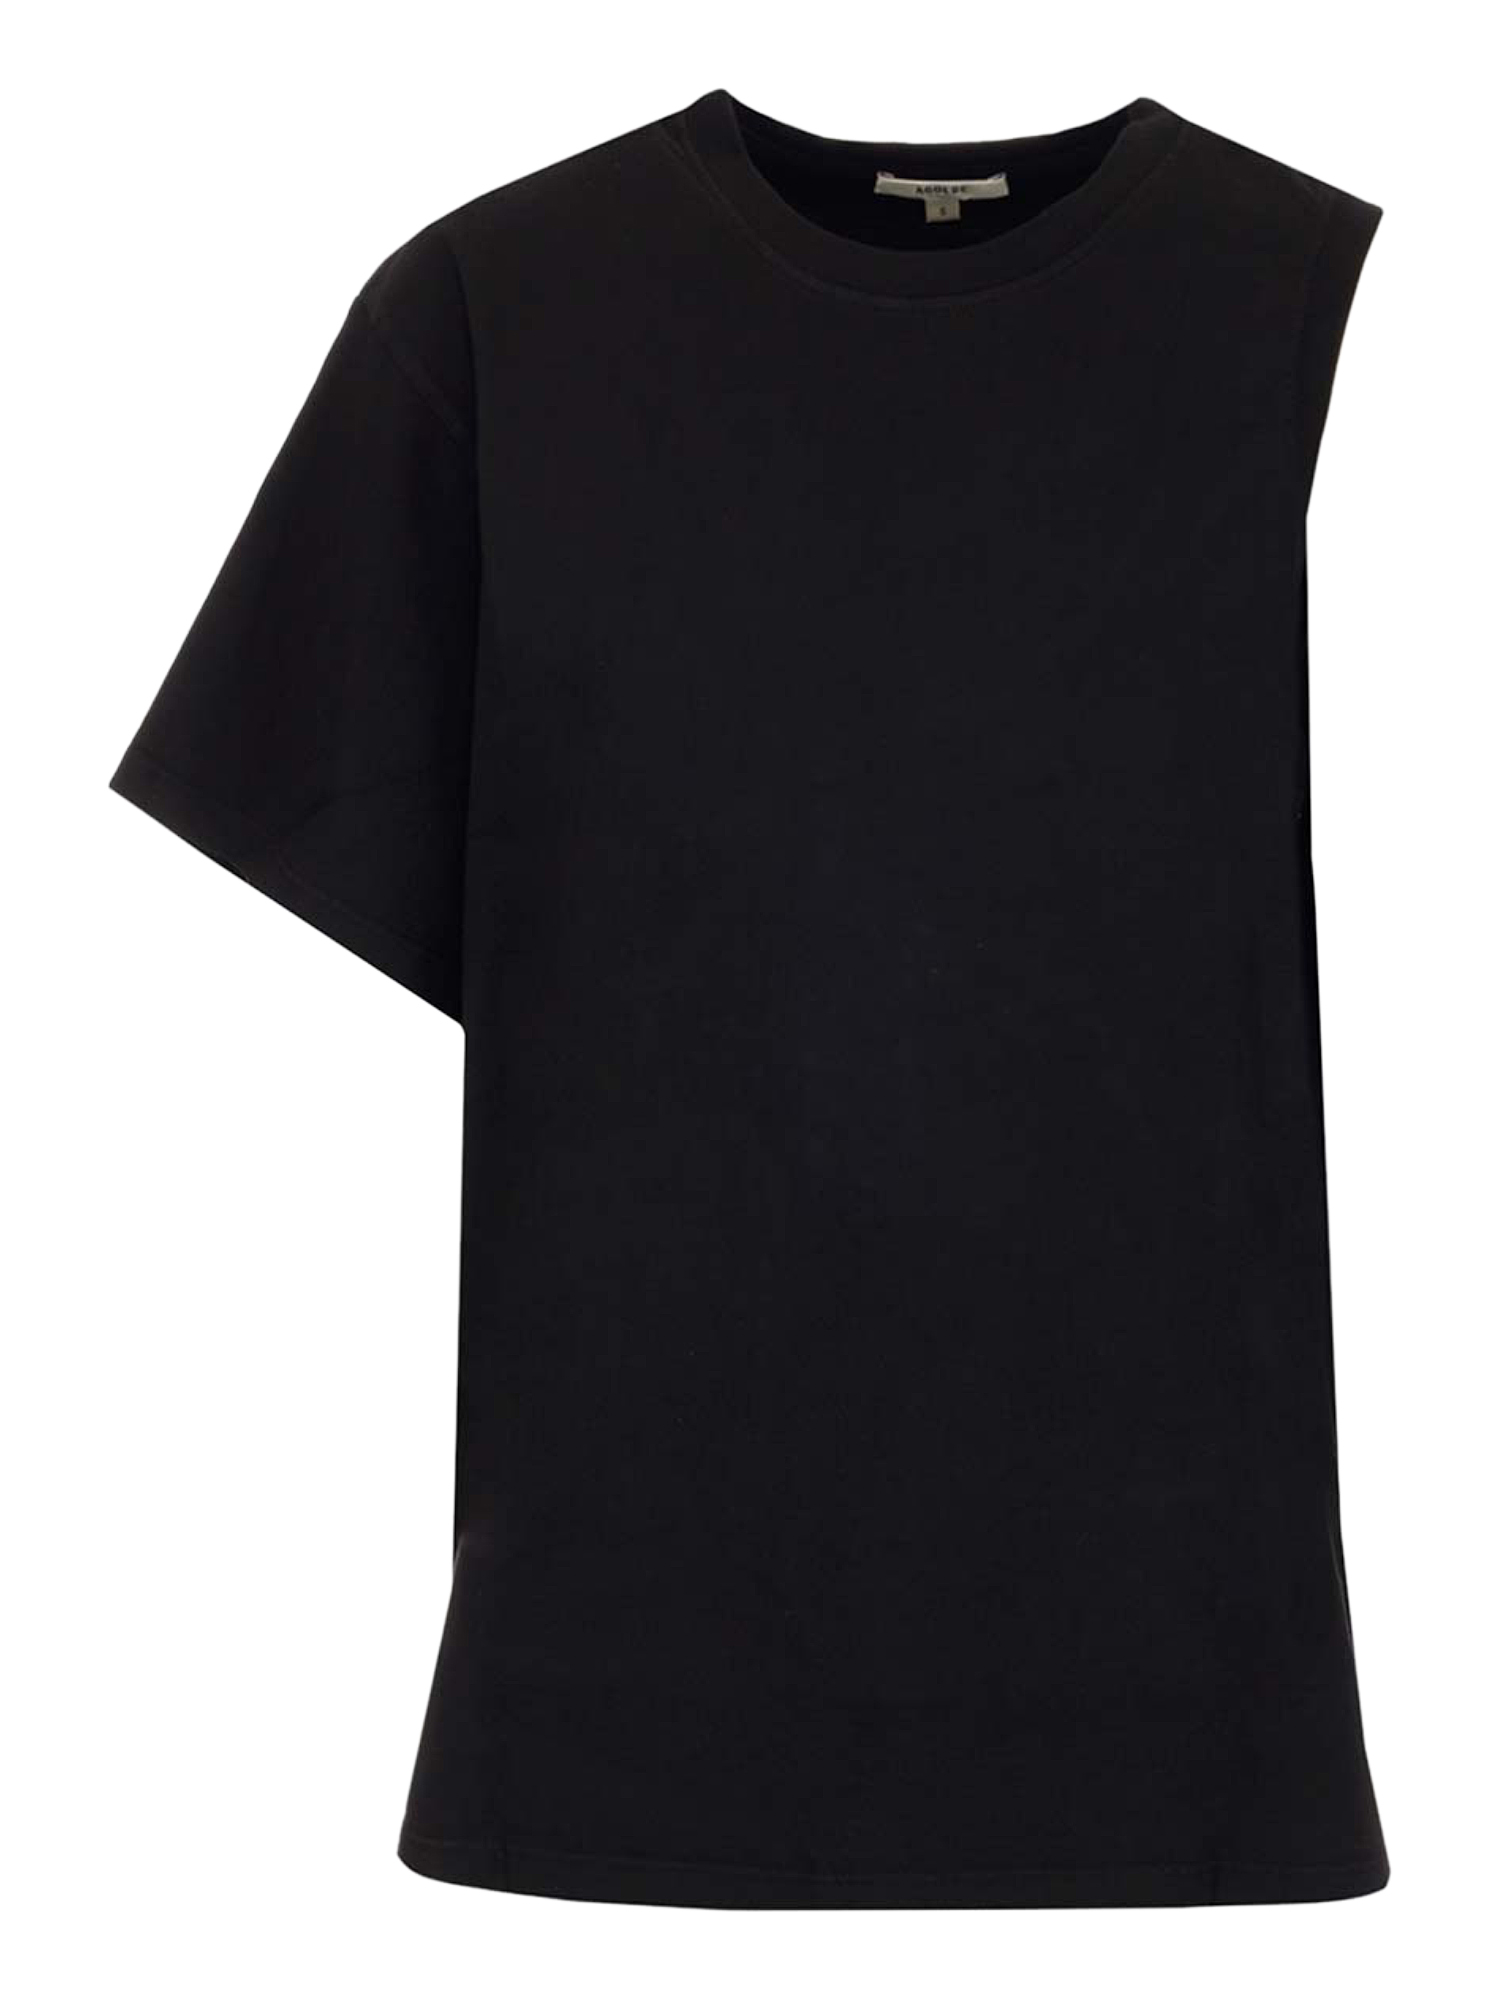 Agolde Femme T-shirts et tops Black Cotton